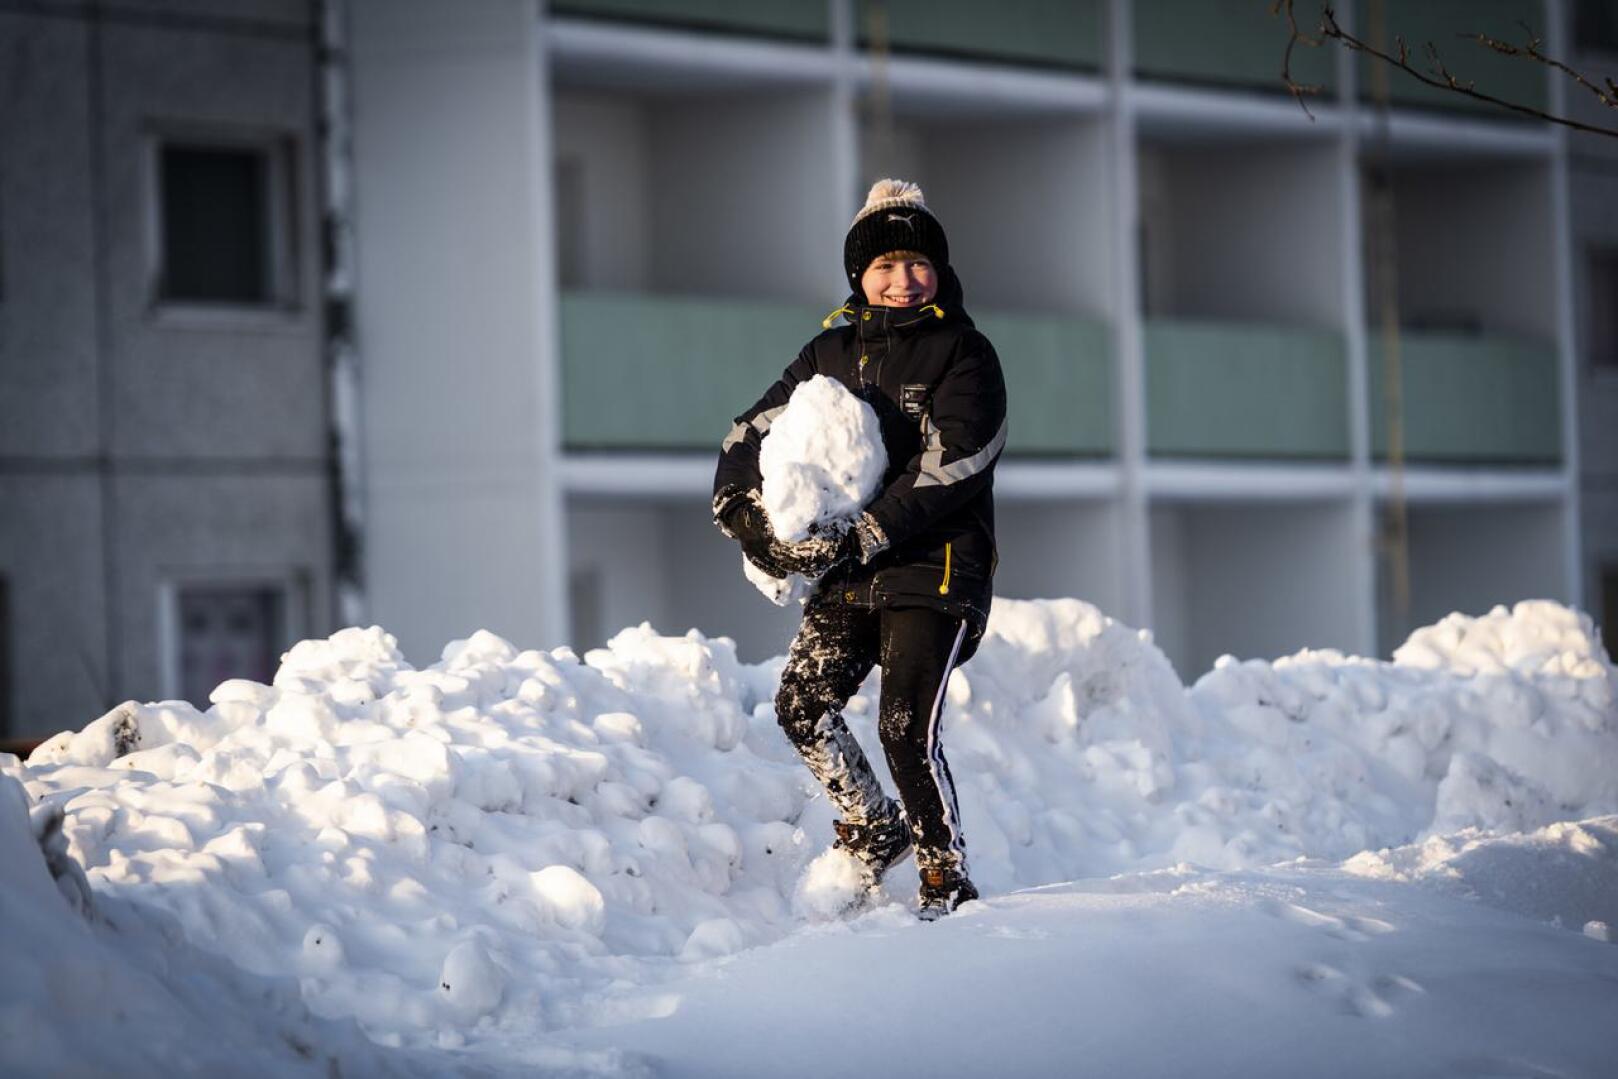 Misha lumitöissä. Suomessa on enemmän lunta kuin kotikaupungissa Ukrainassa.